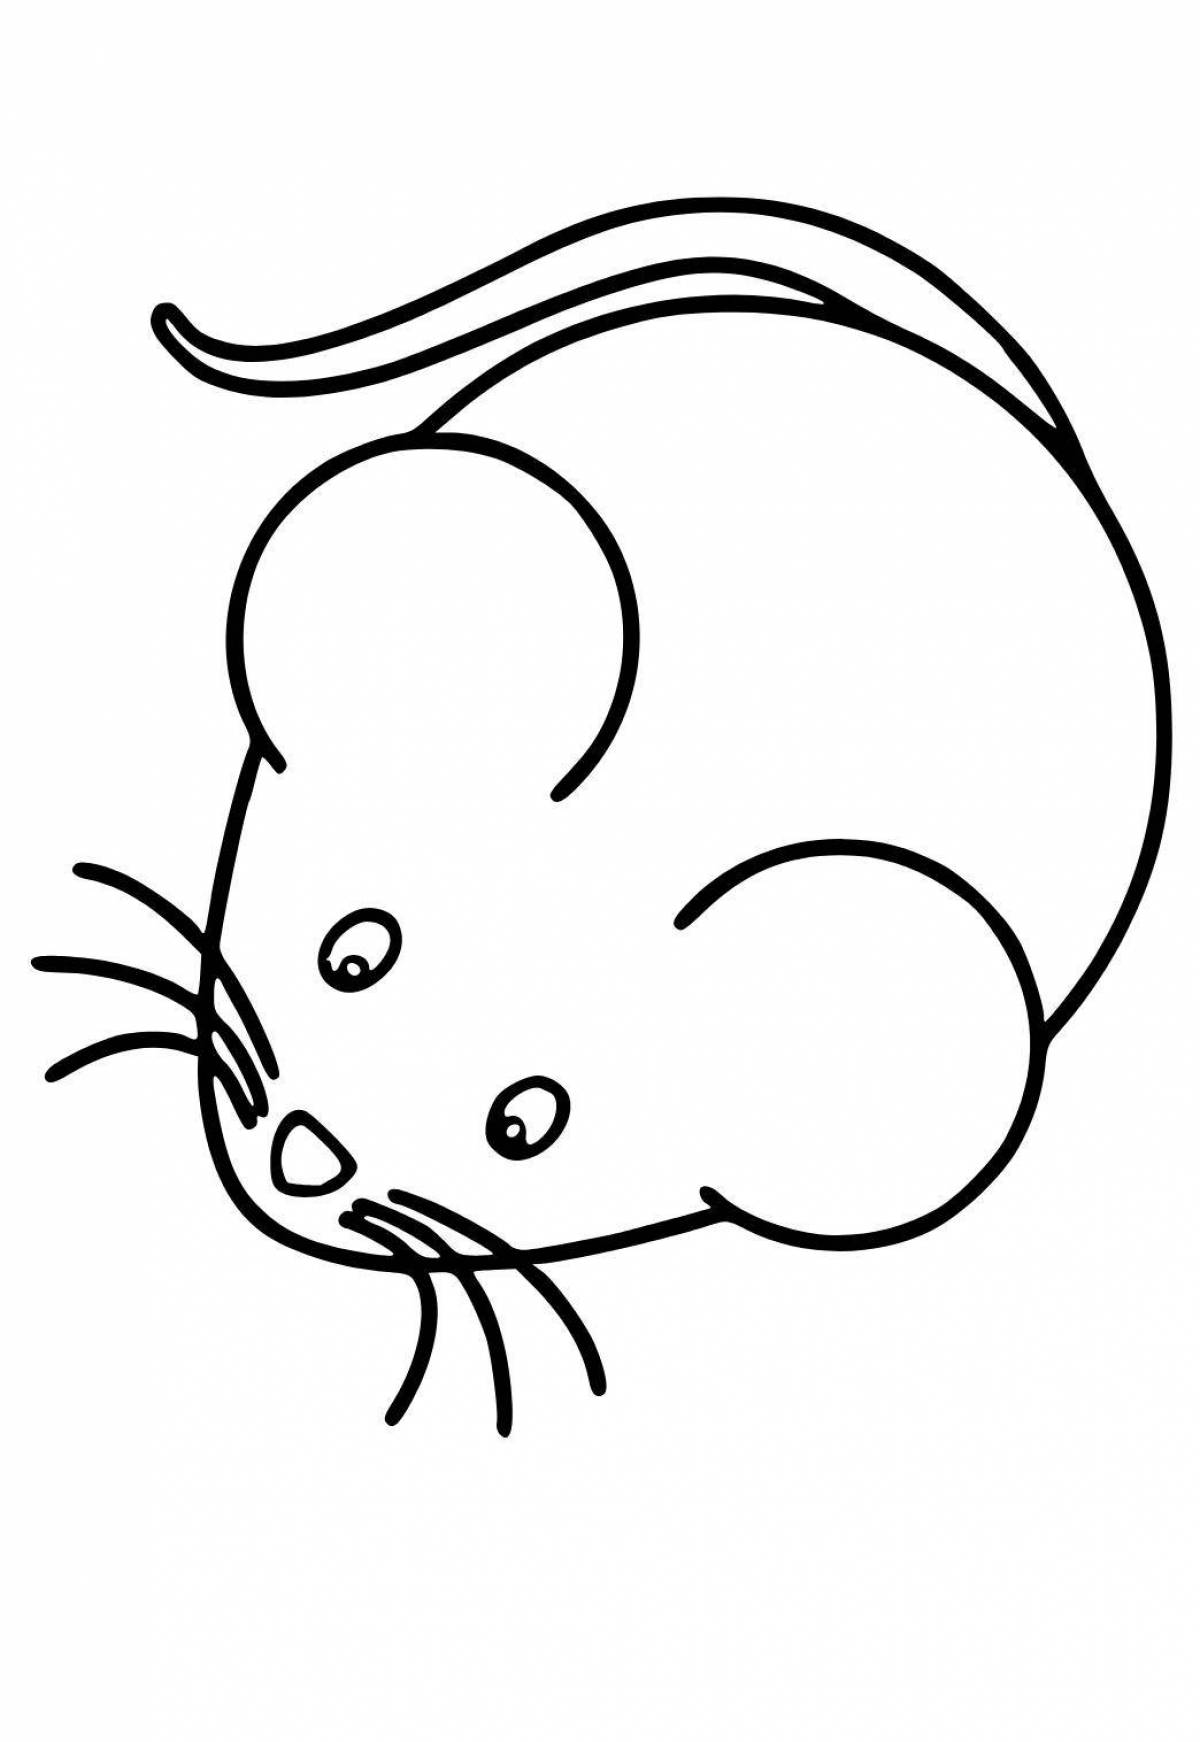 Увлекательная раскраска мышь для детей